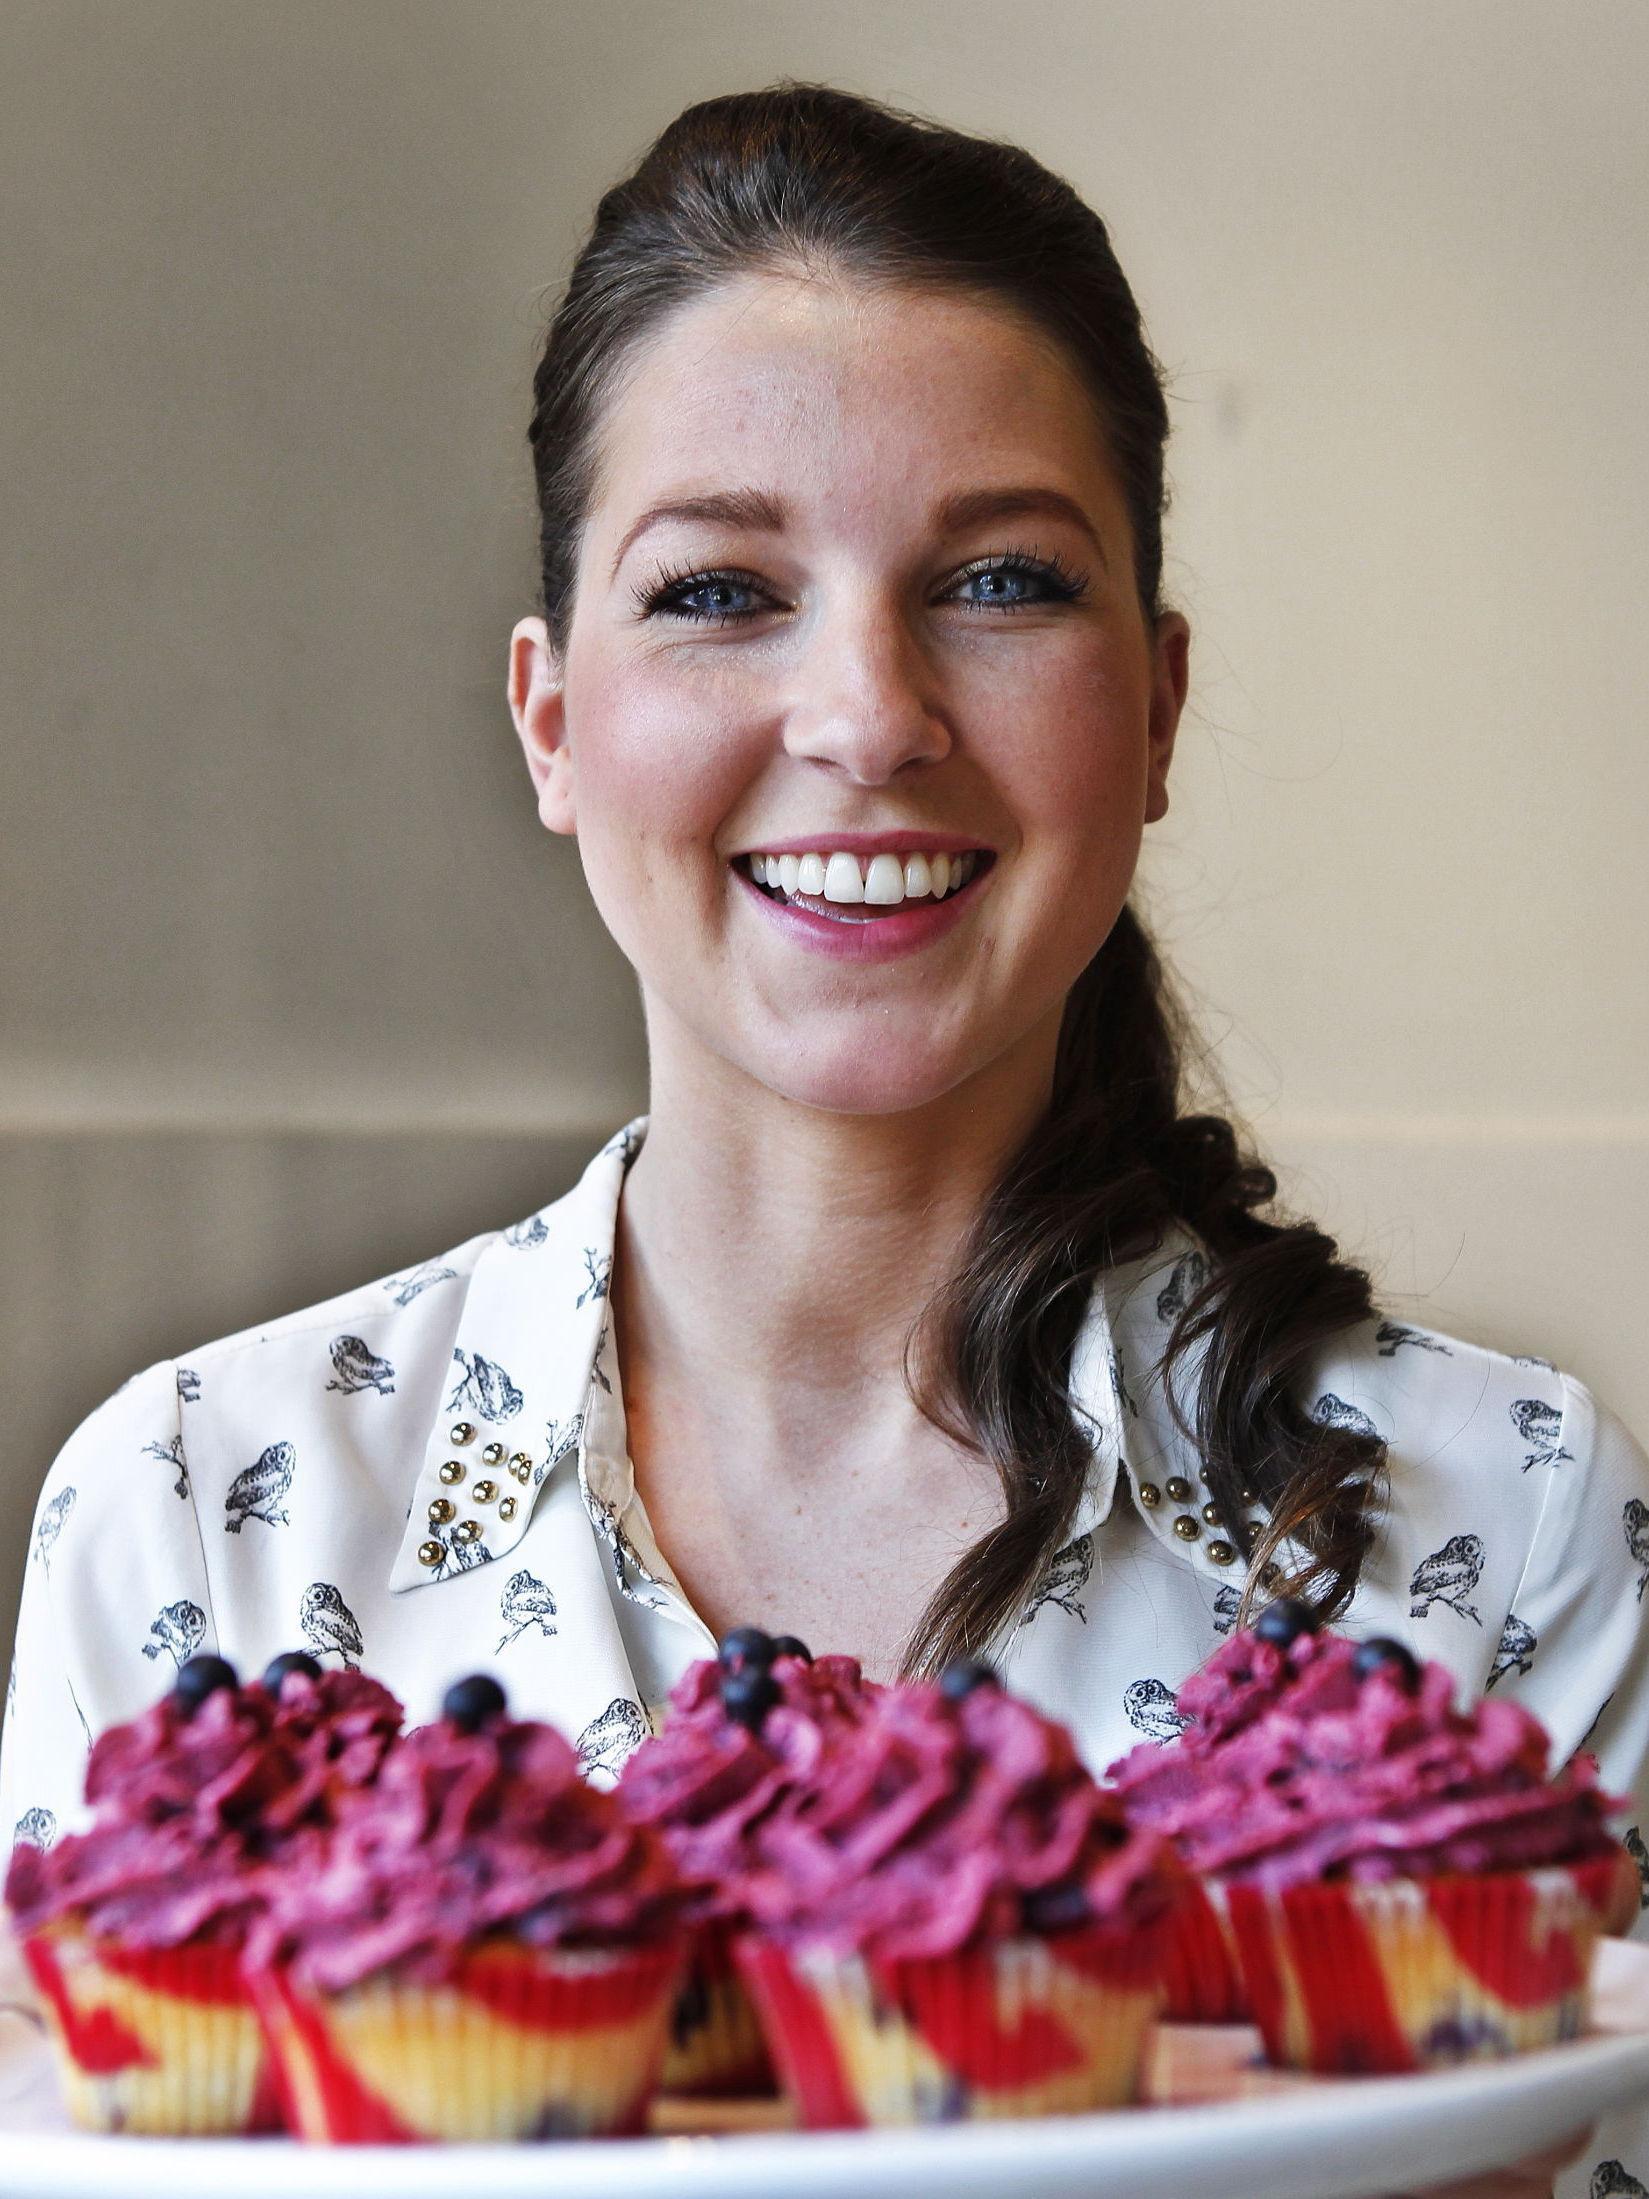 En av Ida Gran-Jansens favoritter er friske smaker av bær. Foto: Nils Bjåland/VG